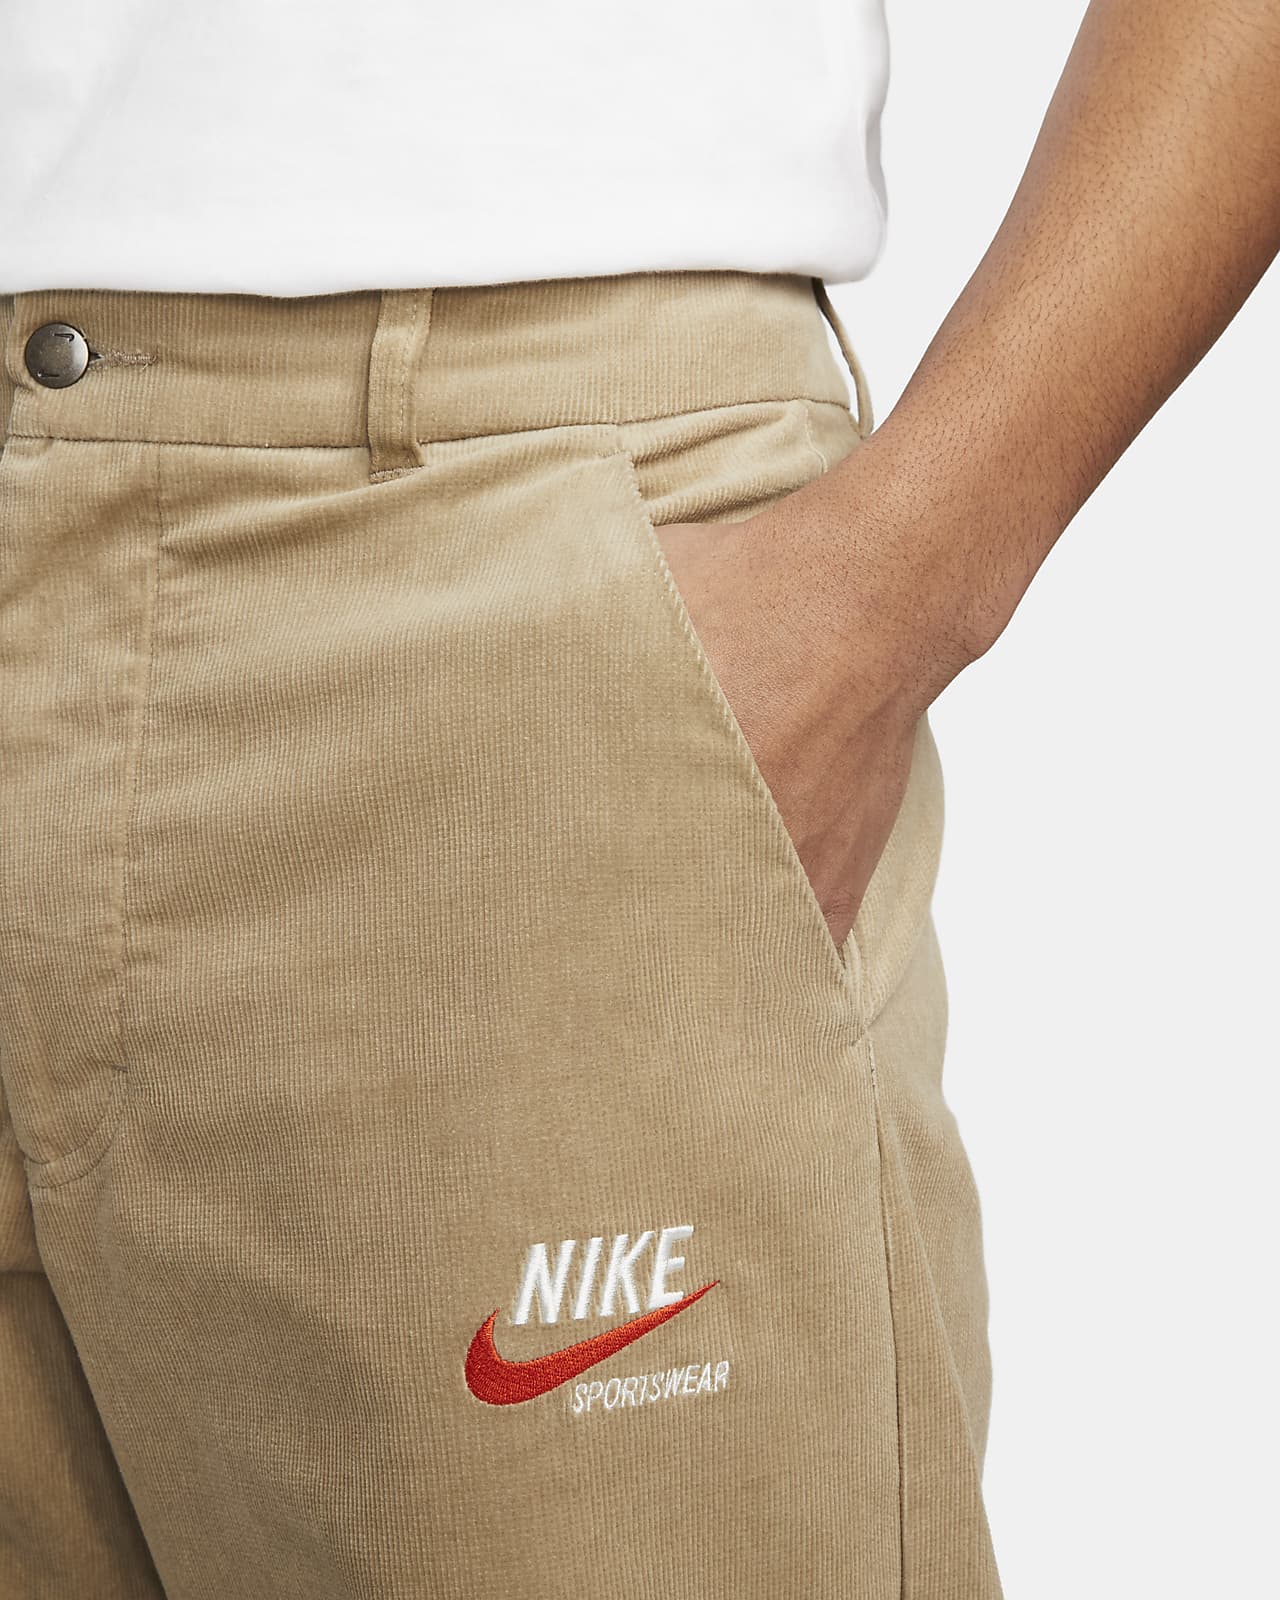 Nike Sportswear Trend Trousers.